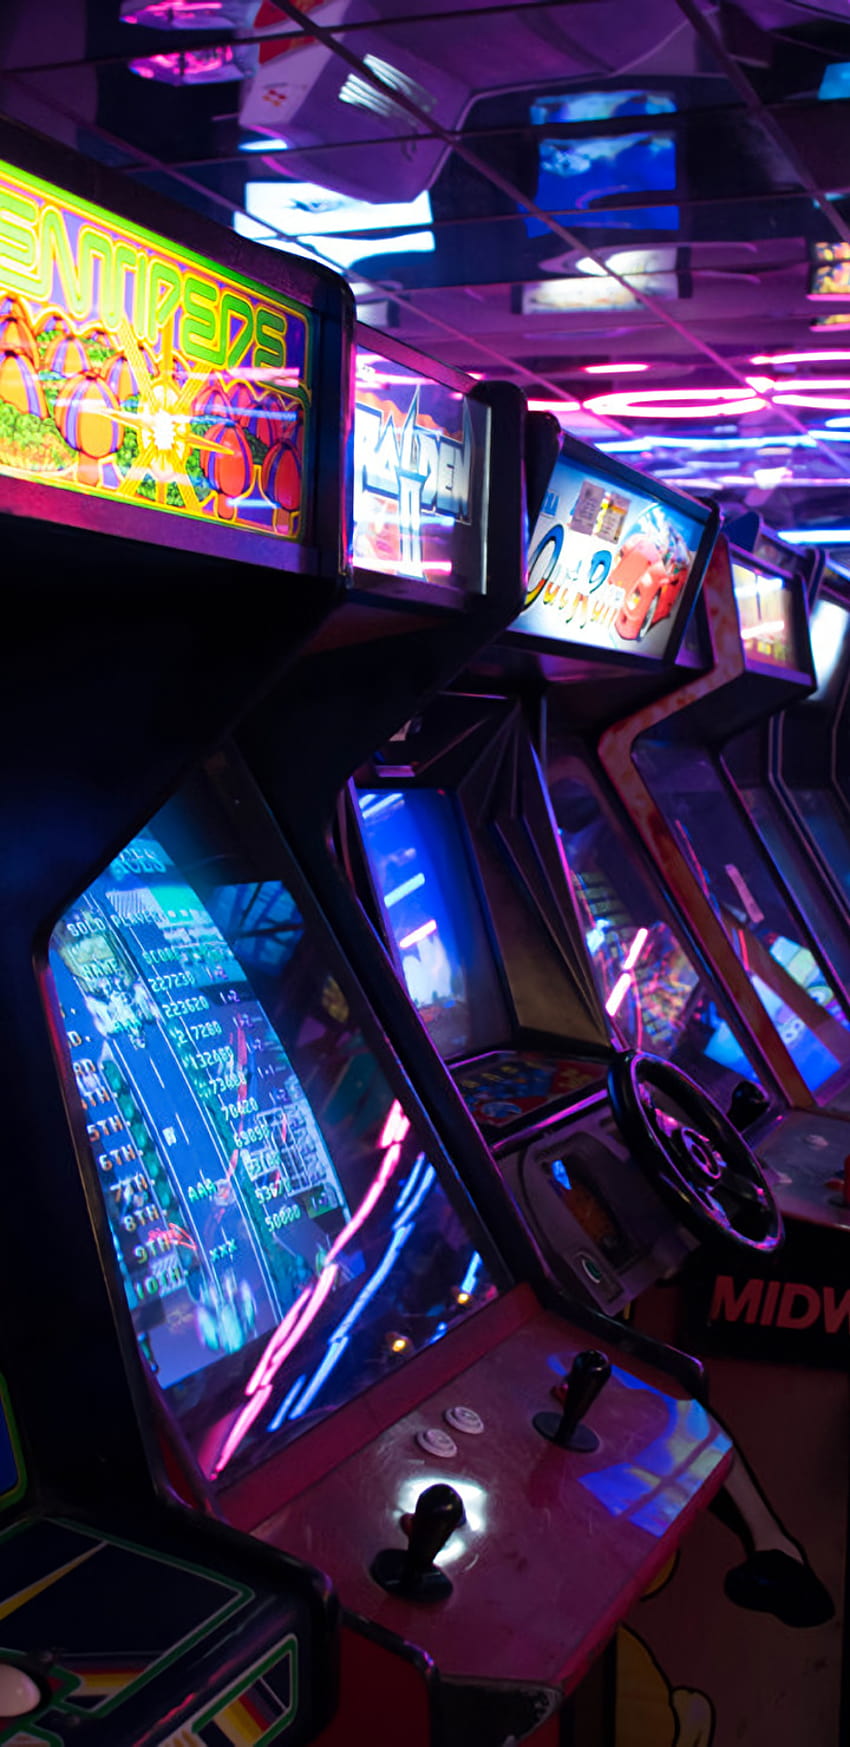 Mensch, Person, Arcade-Spielautomat, Monitor, durch Ze Robot in der Größe verändertes Display, Arcade-Kern HD-Handy-Hintergrundbild